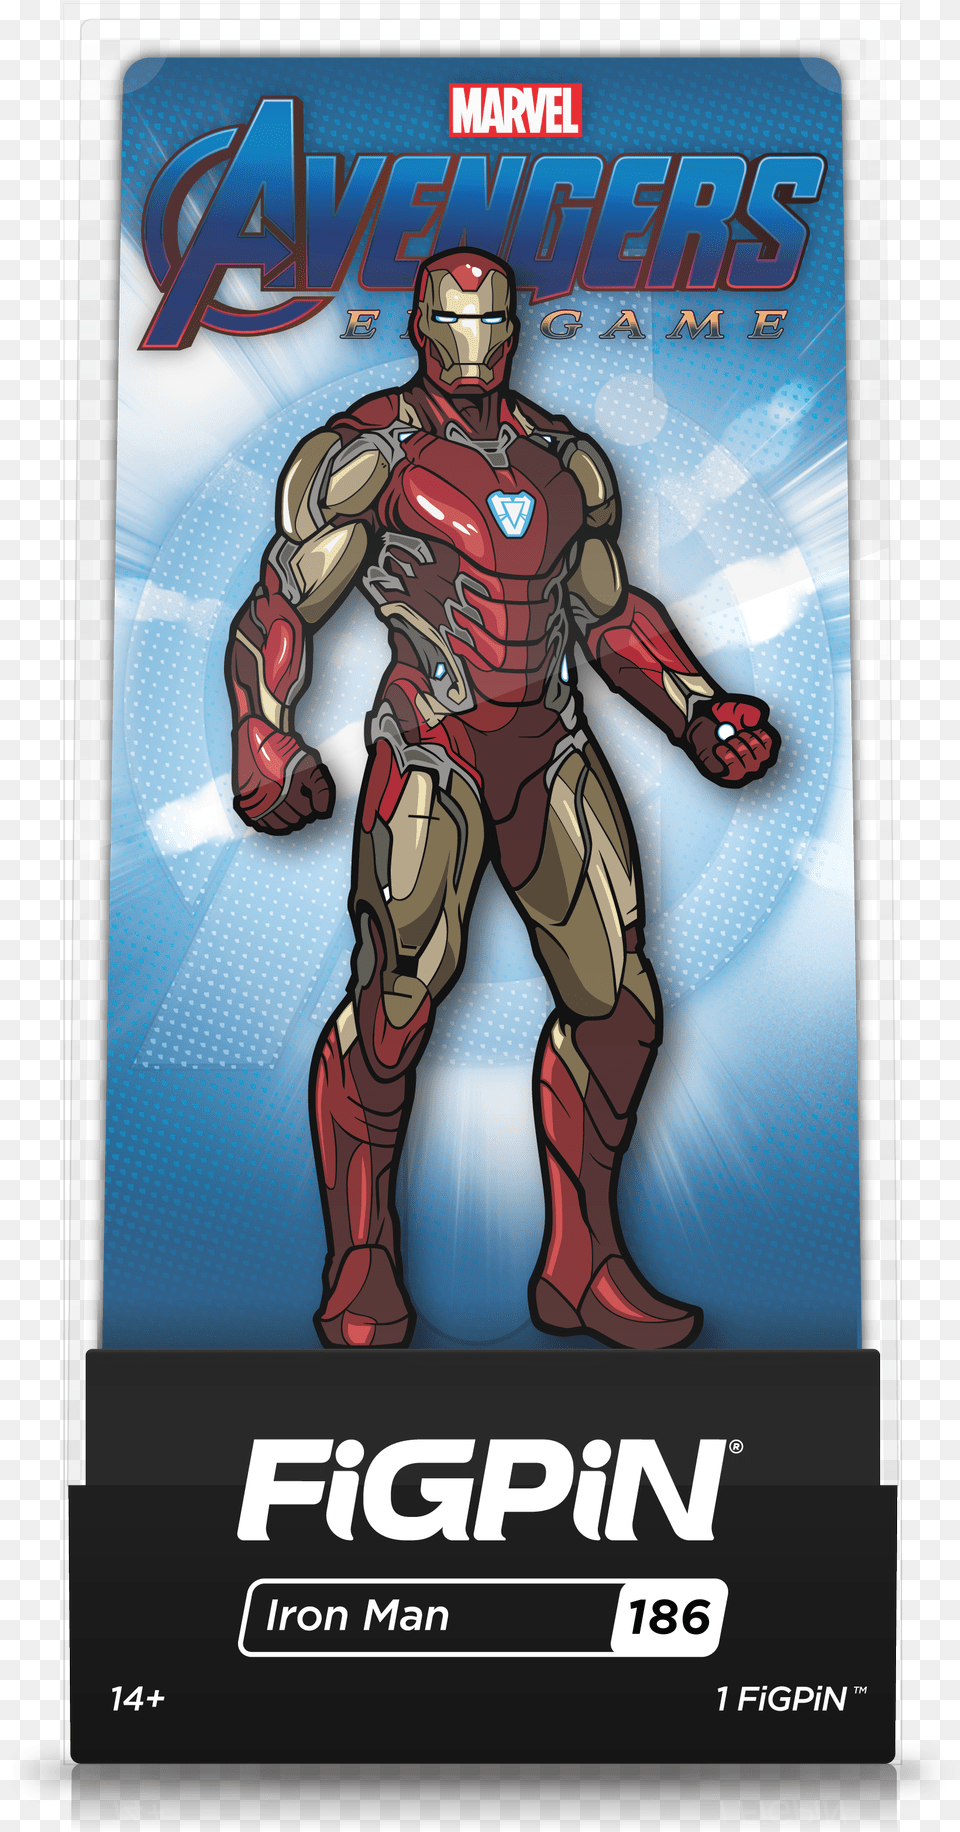 Avengers Endgame Iron Man Figure, Publication, Book, Comics, Person Free Transparent Png